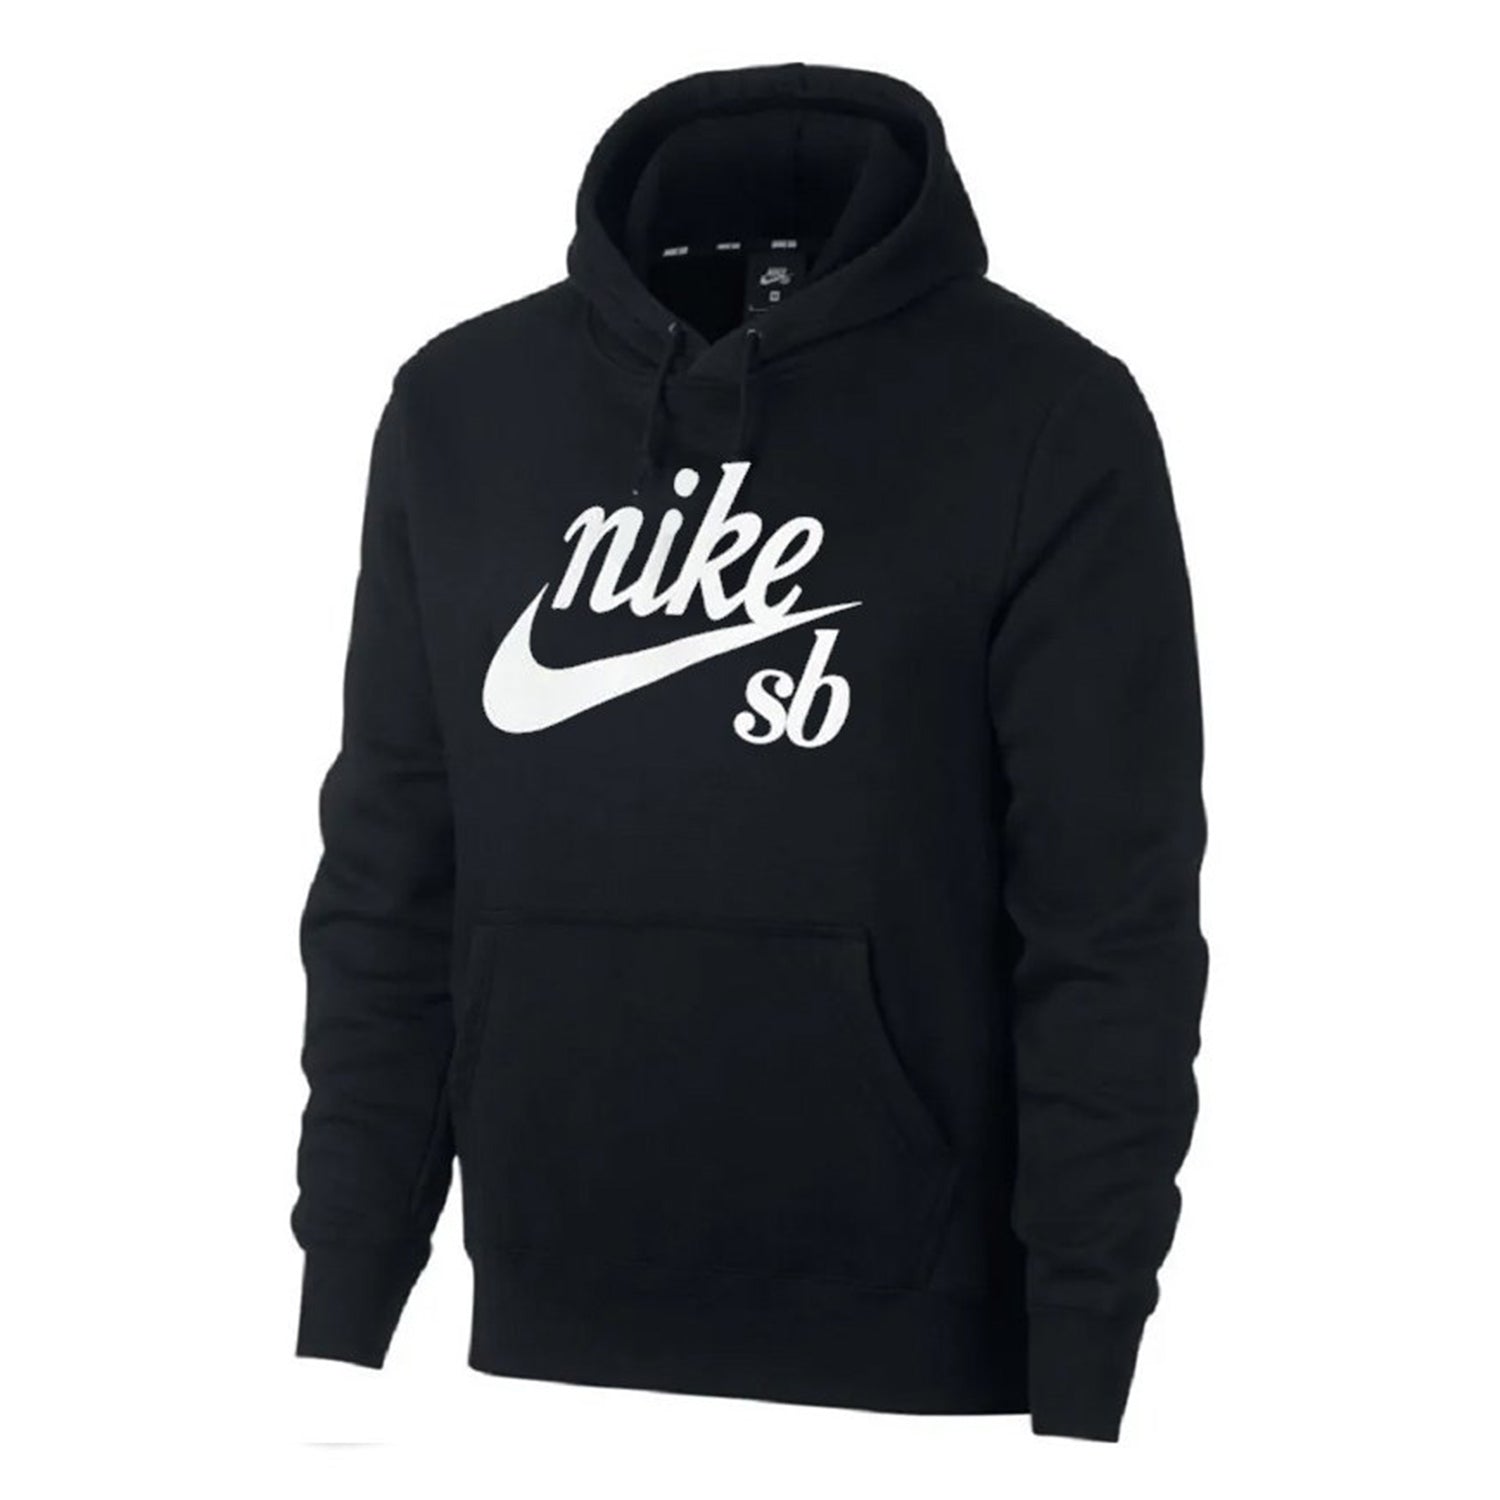 Nike Sb Skate Hoodie Mens Style : Cw4383